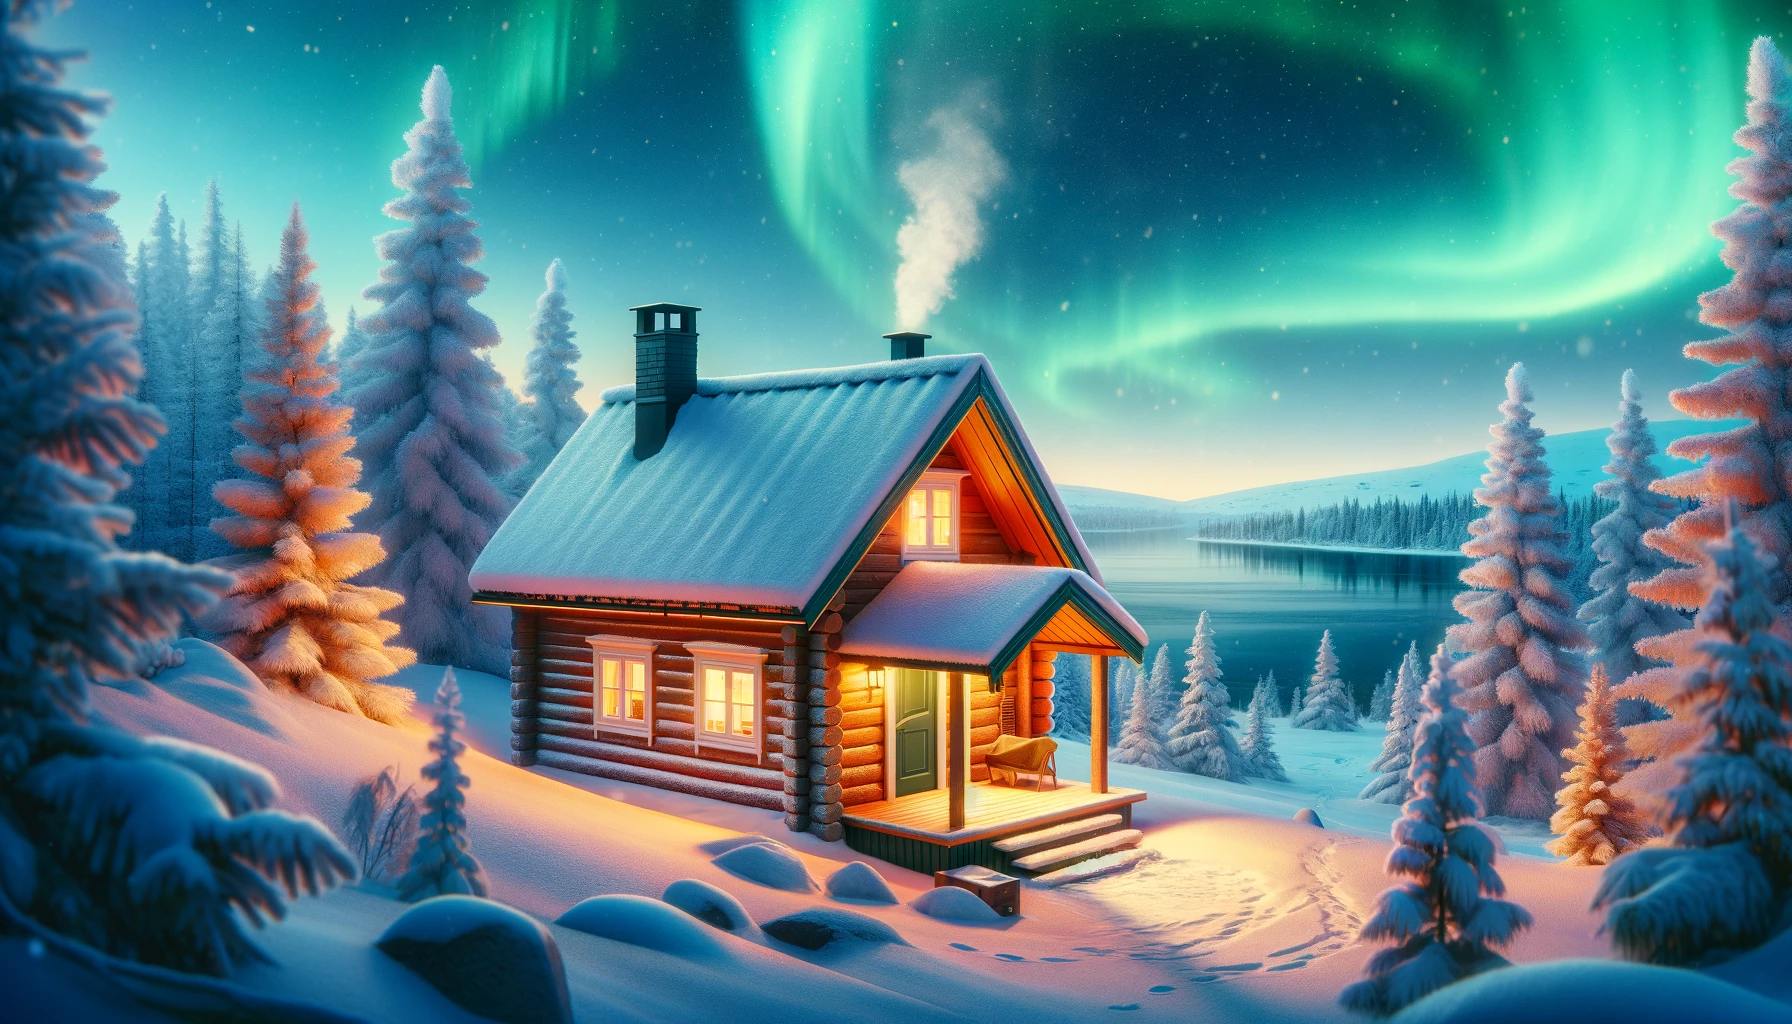 Przytulna fińska chata (mökki) w śnieżnym krajobrazie z widokiem na zorzę polarną.